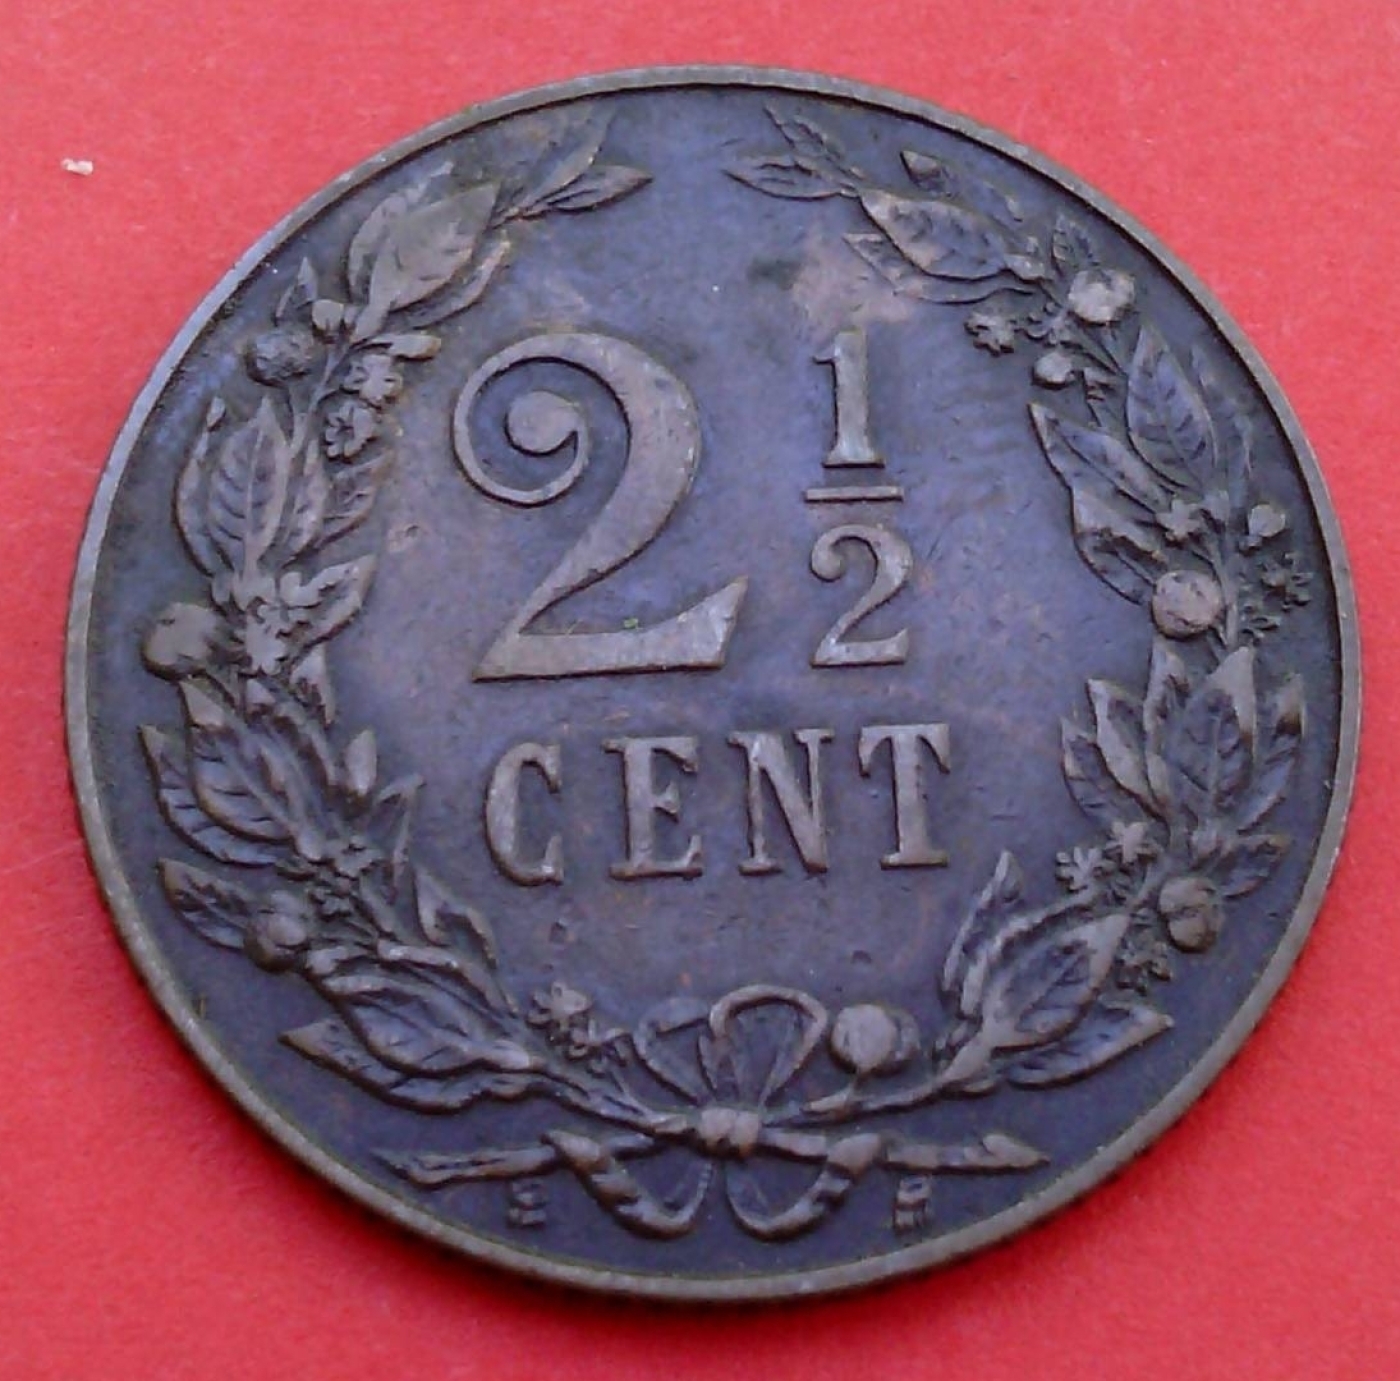 Niederlande 2 1/2 Cent 1880 gutes EF!Patina